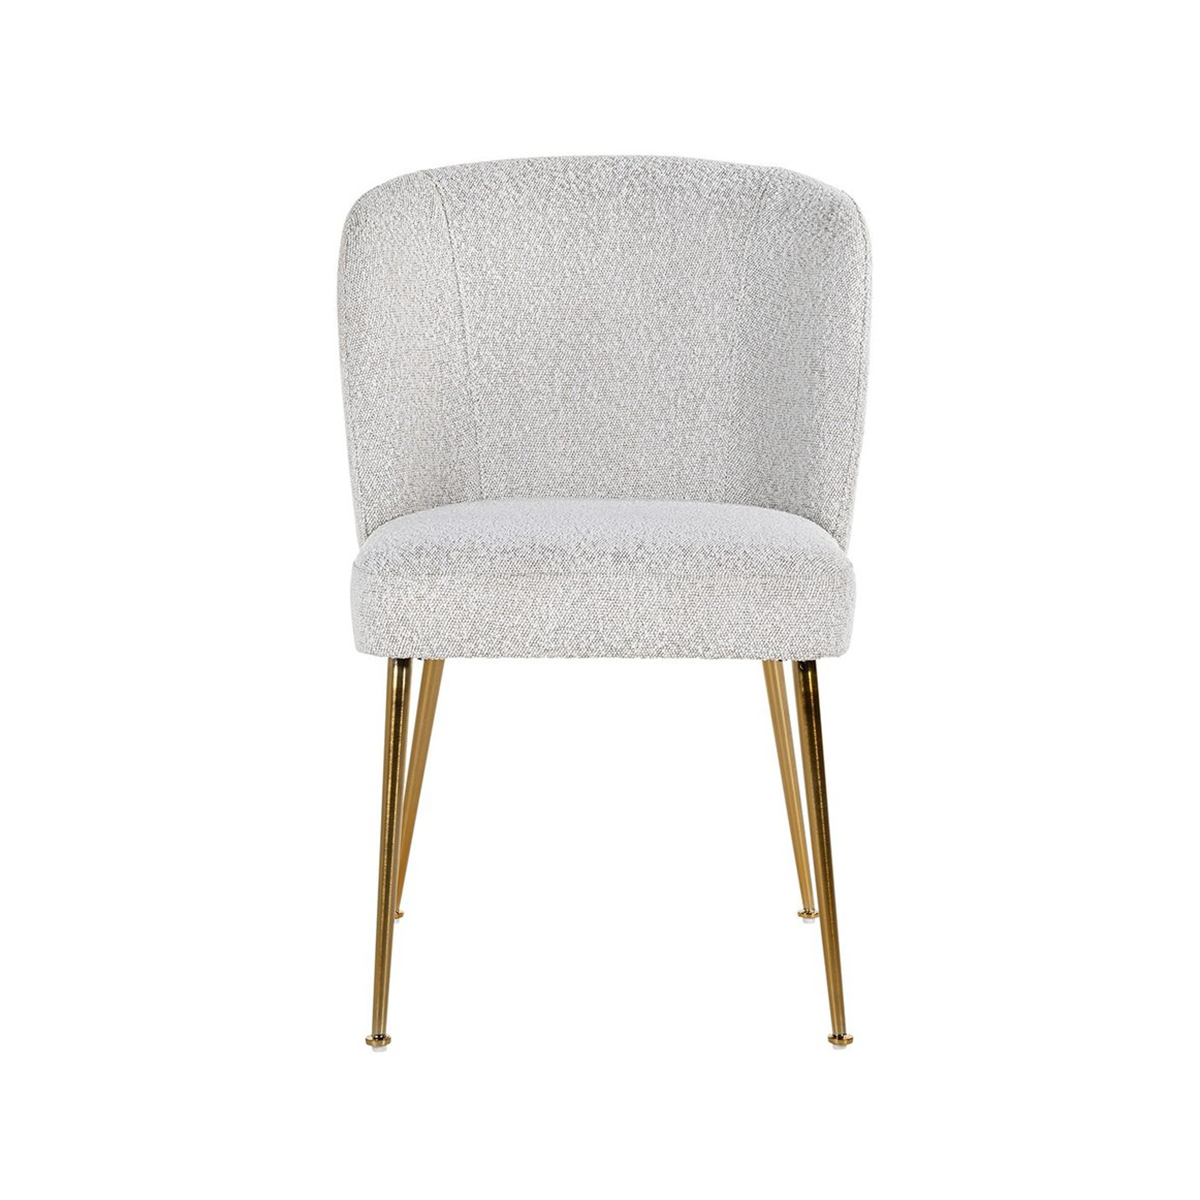 FondHouse Robina White Velvet Dining Chair - With Golden Legs